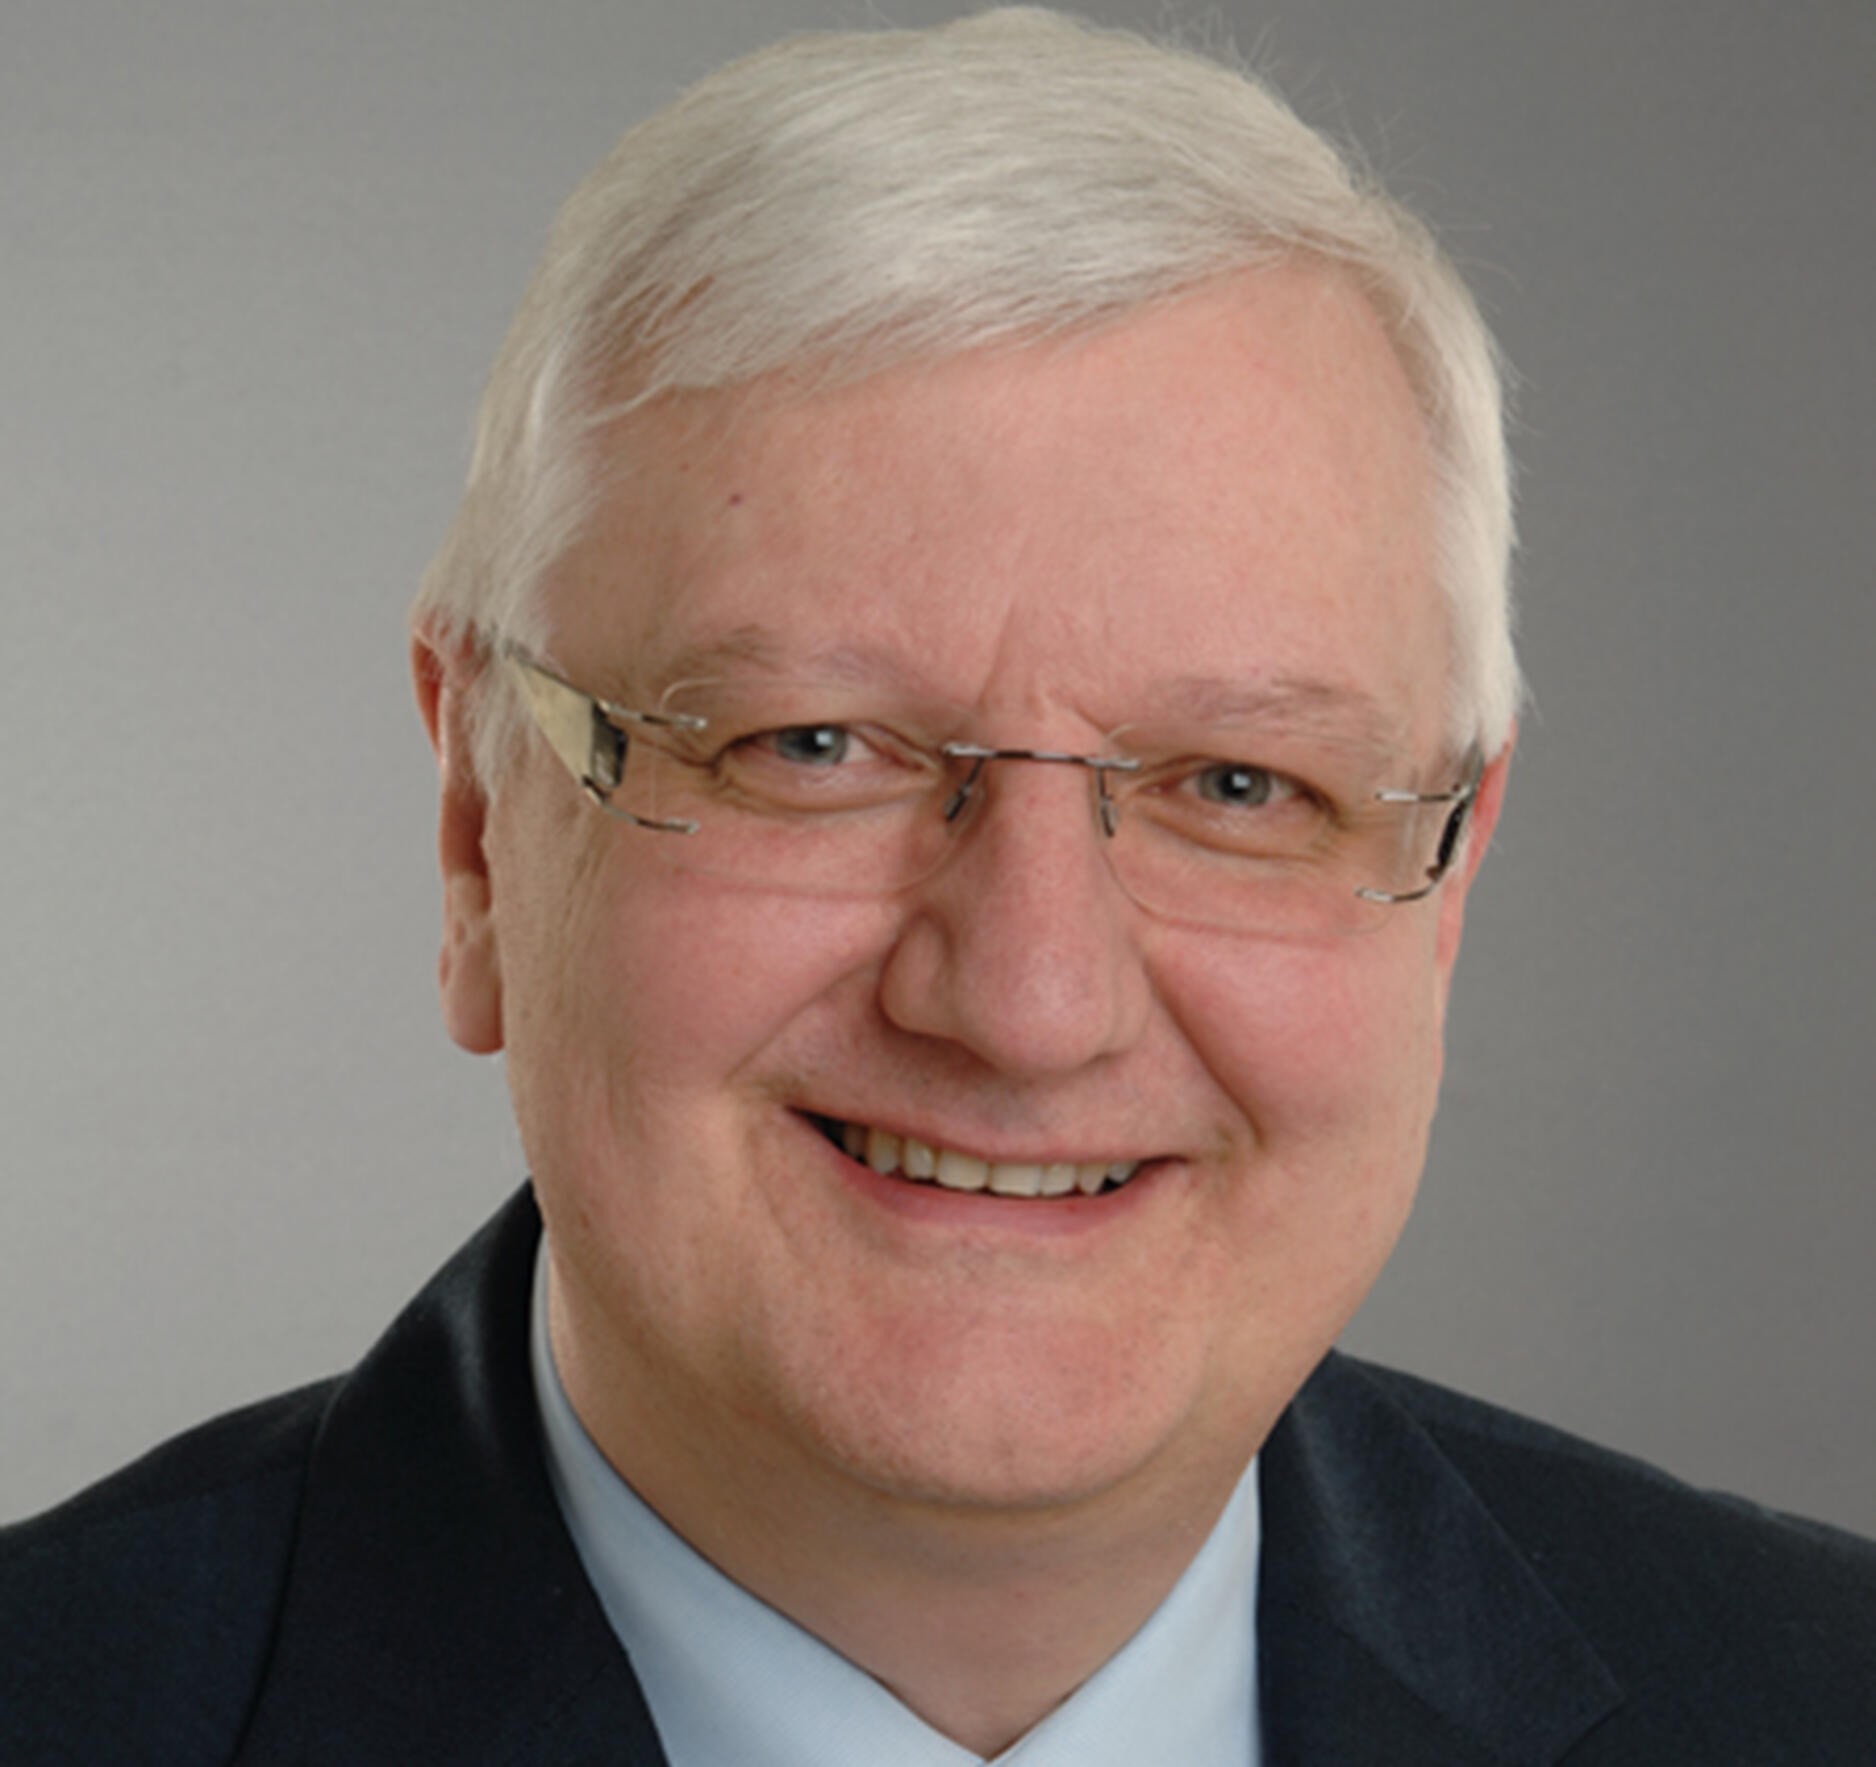 Porträt von Wolfgang Ernst, Rektor der HVF